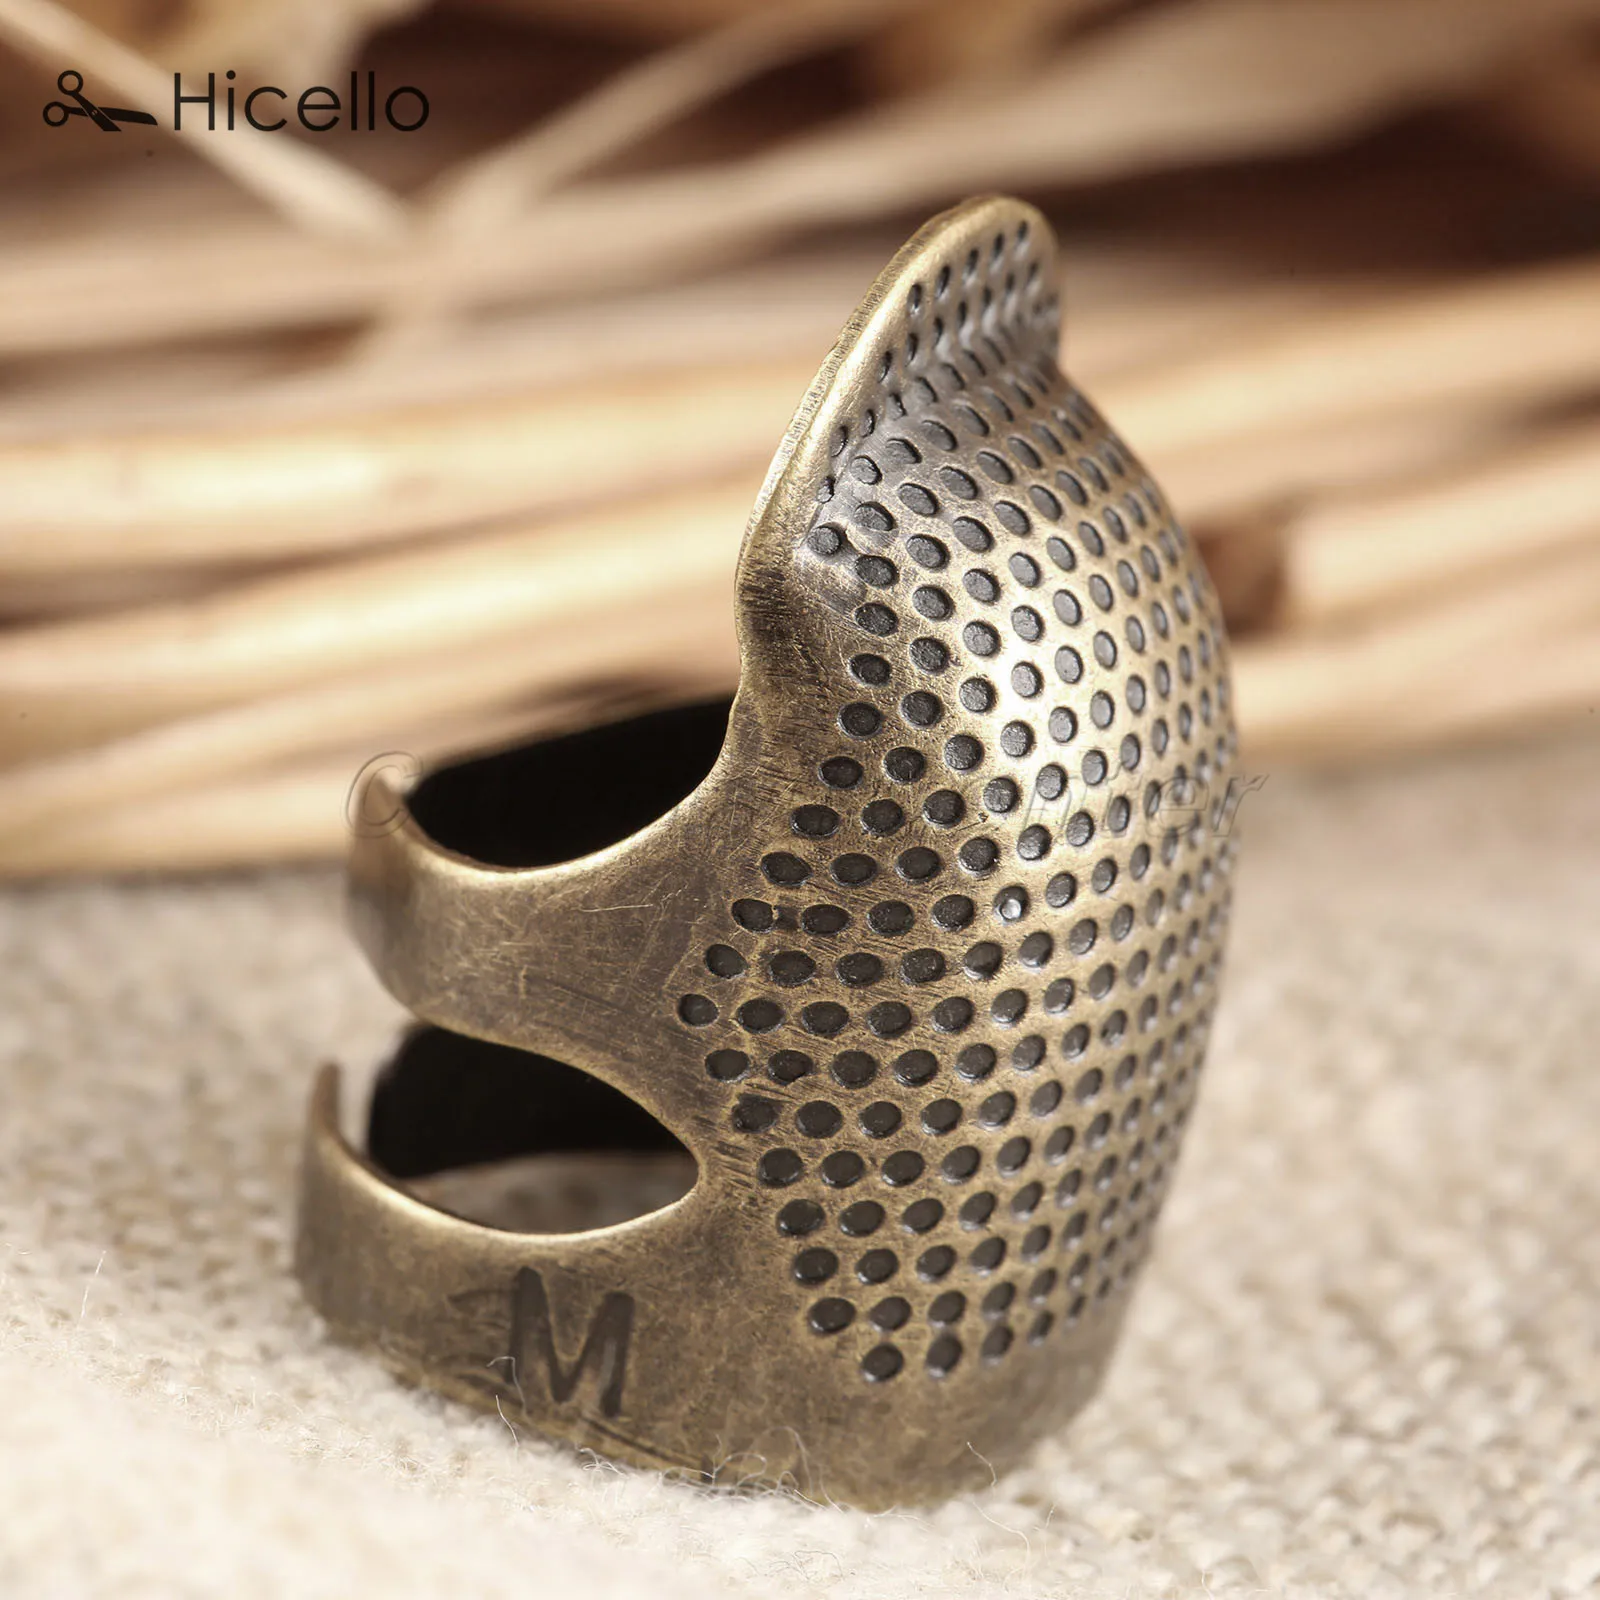 Кольцо для шитья Thimblec 2,3*1,5 см/2,5*1,7 см античные металлические латунные иглы защита для пальцев DIY Размер M/S Швейные аксессуары Hicello - Цвет: Middle 16-18mm